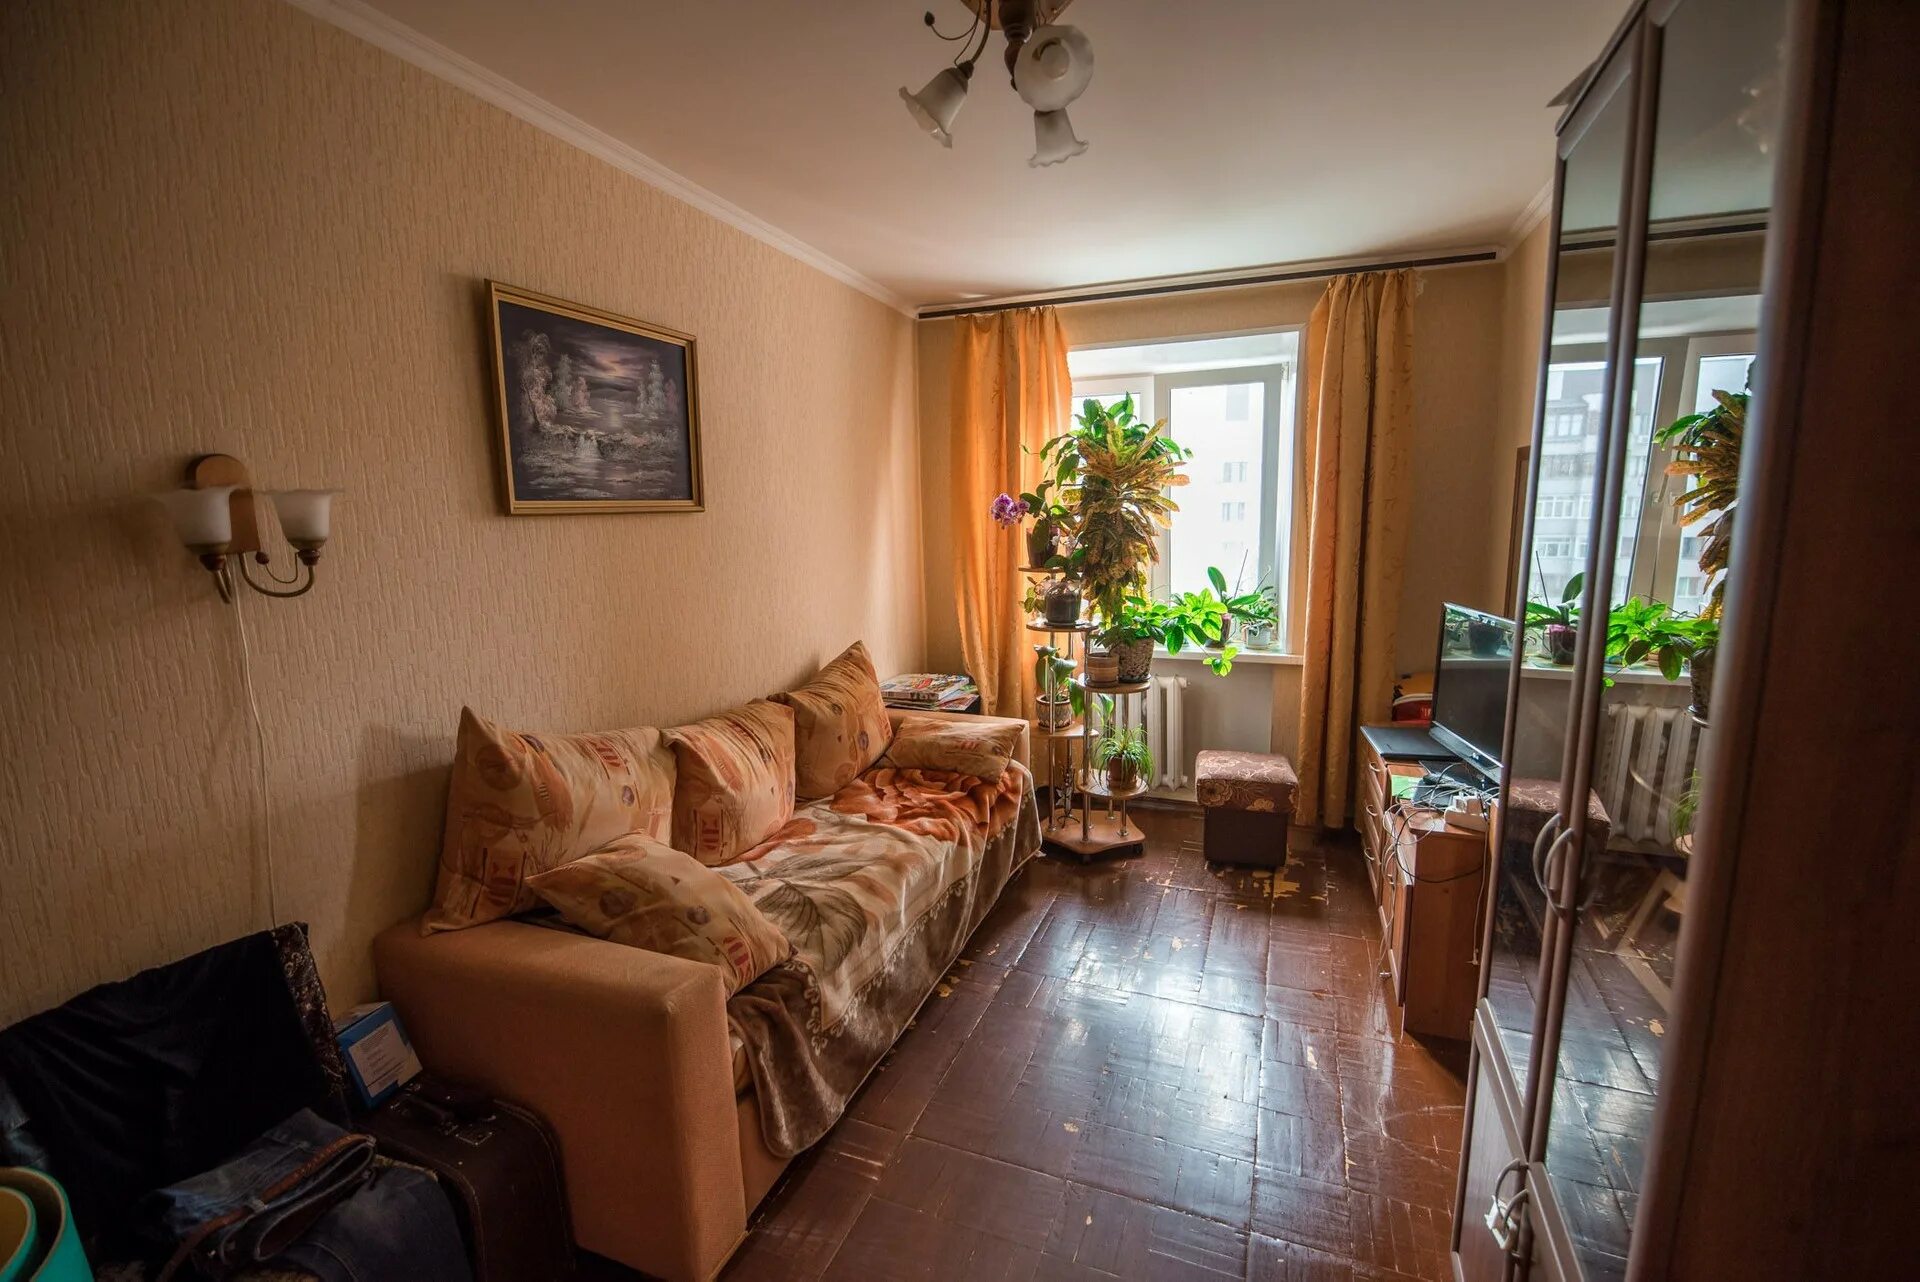 Квартира обычная. Обычная квартира в России. Жилая комната обычная. Дешевые комнаты. Купить квартиру на ул лета